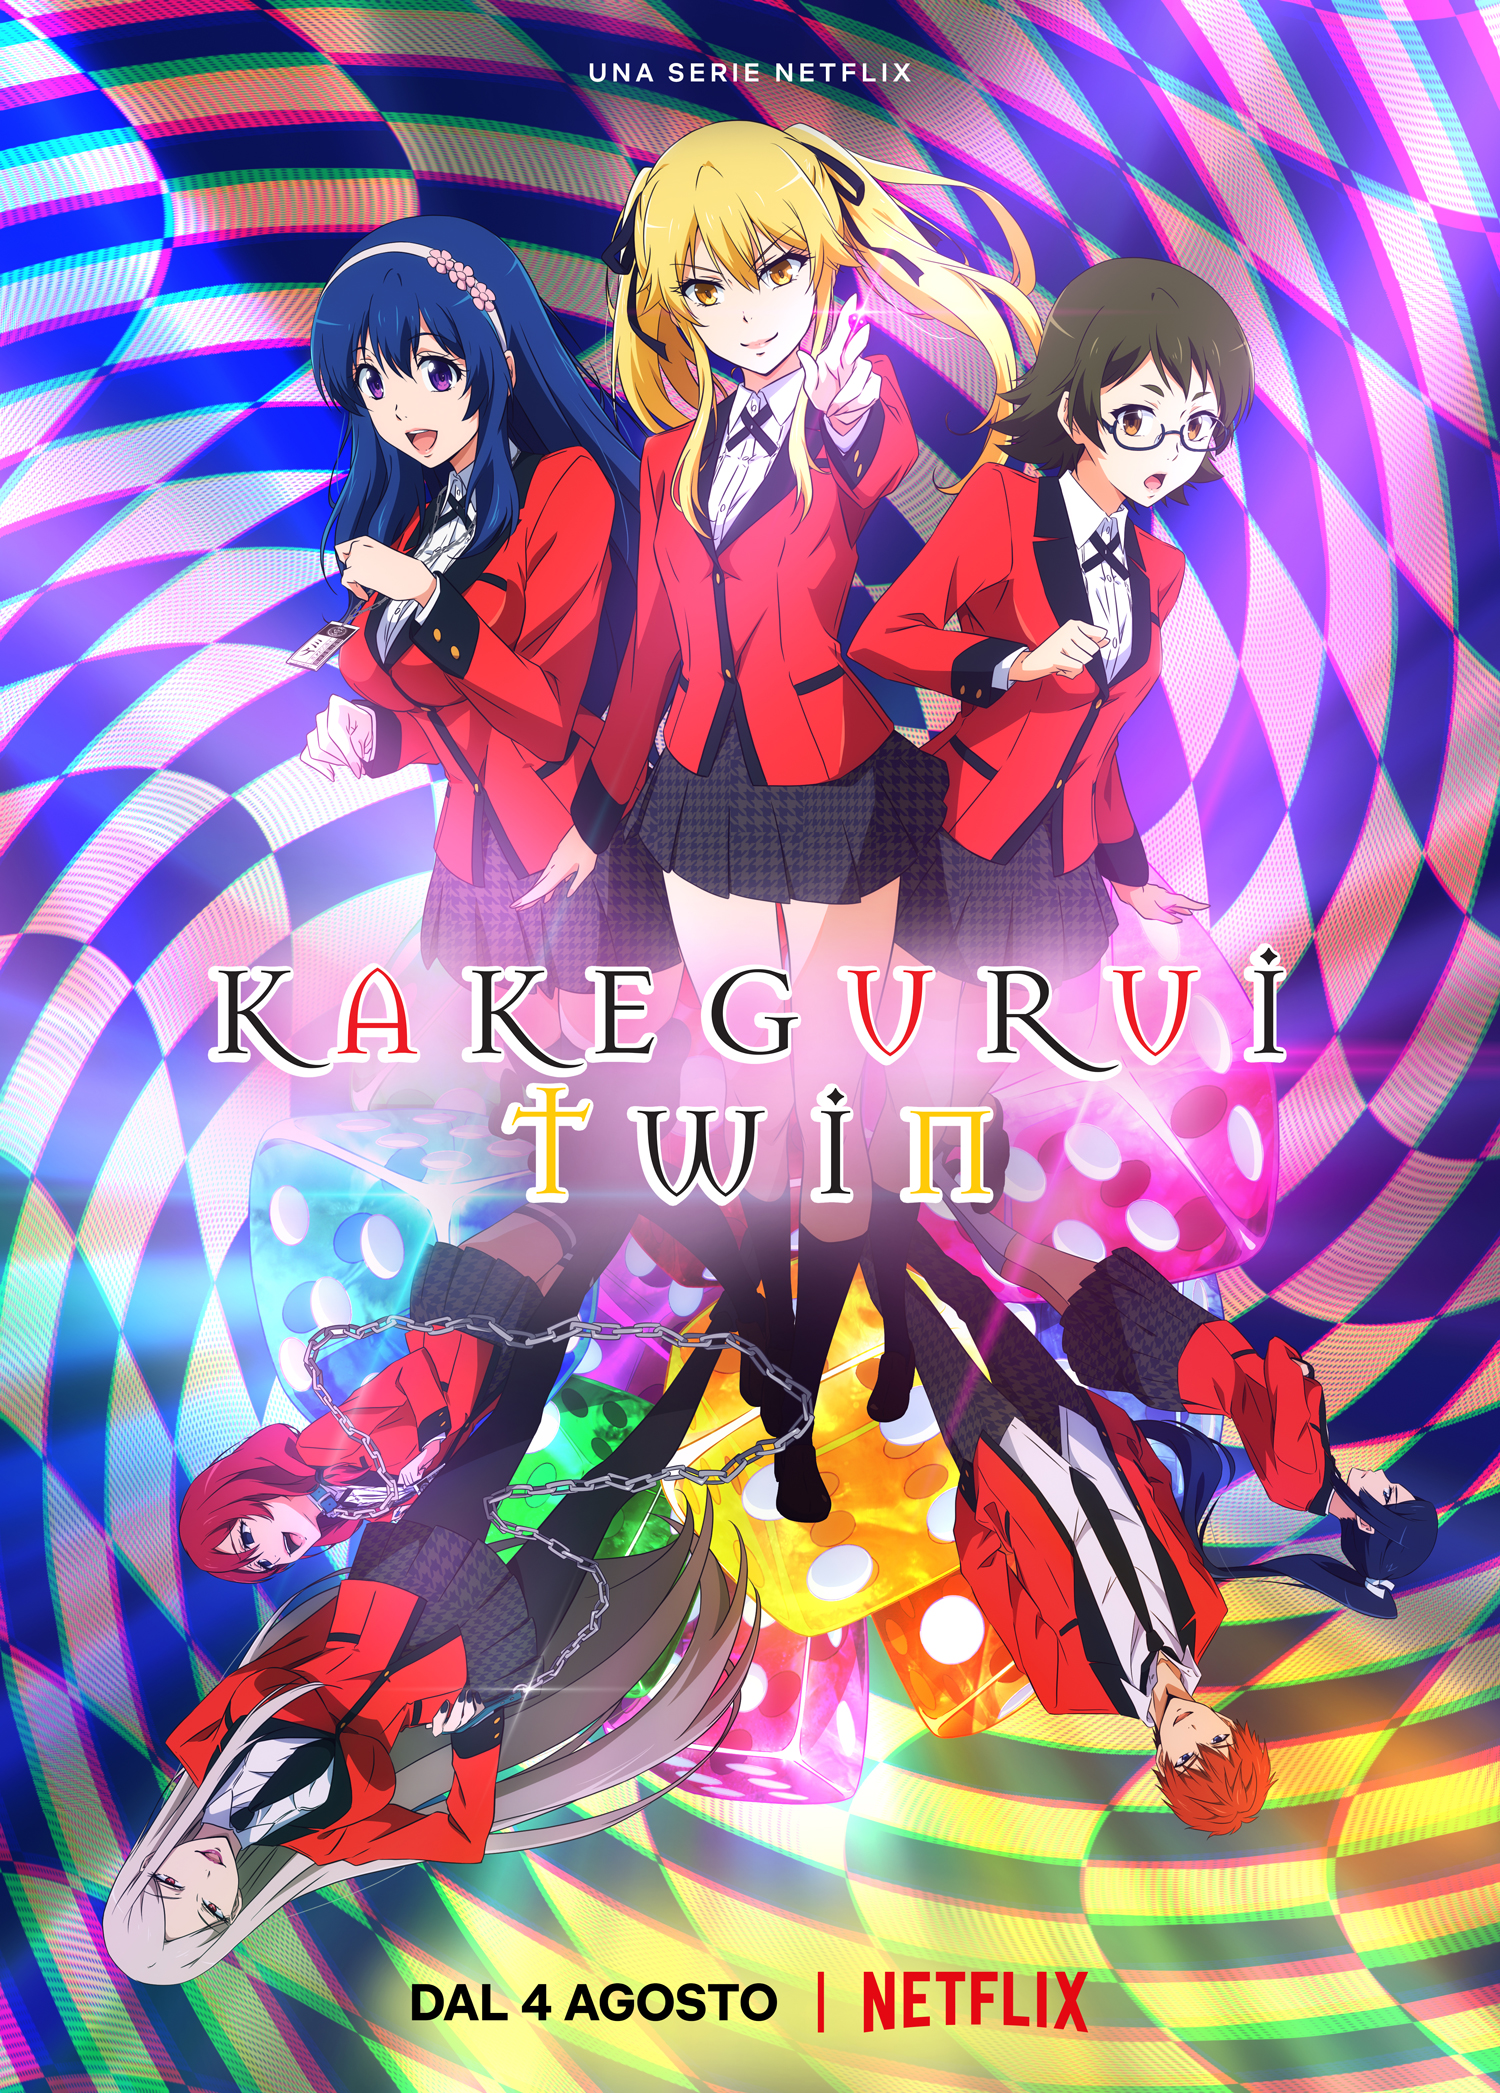 La recensione della prima stagione di Kakegurui Twin